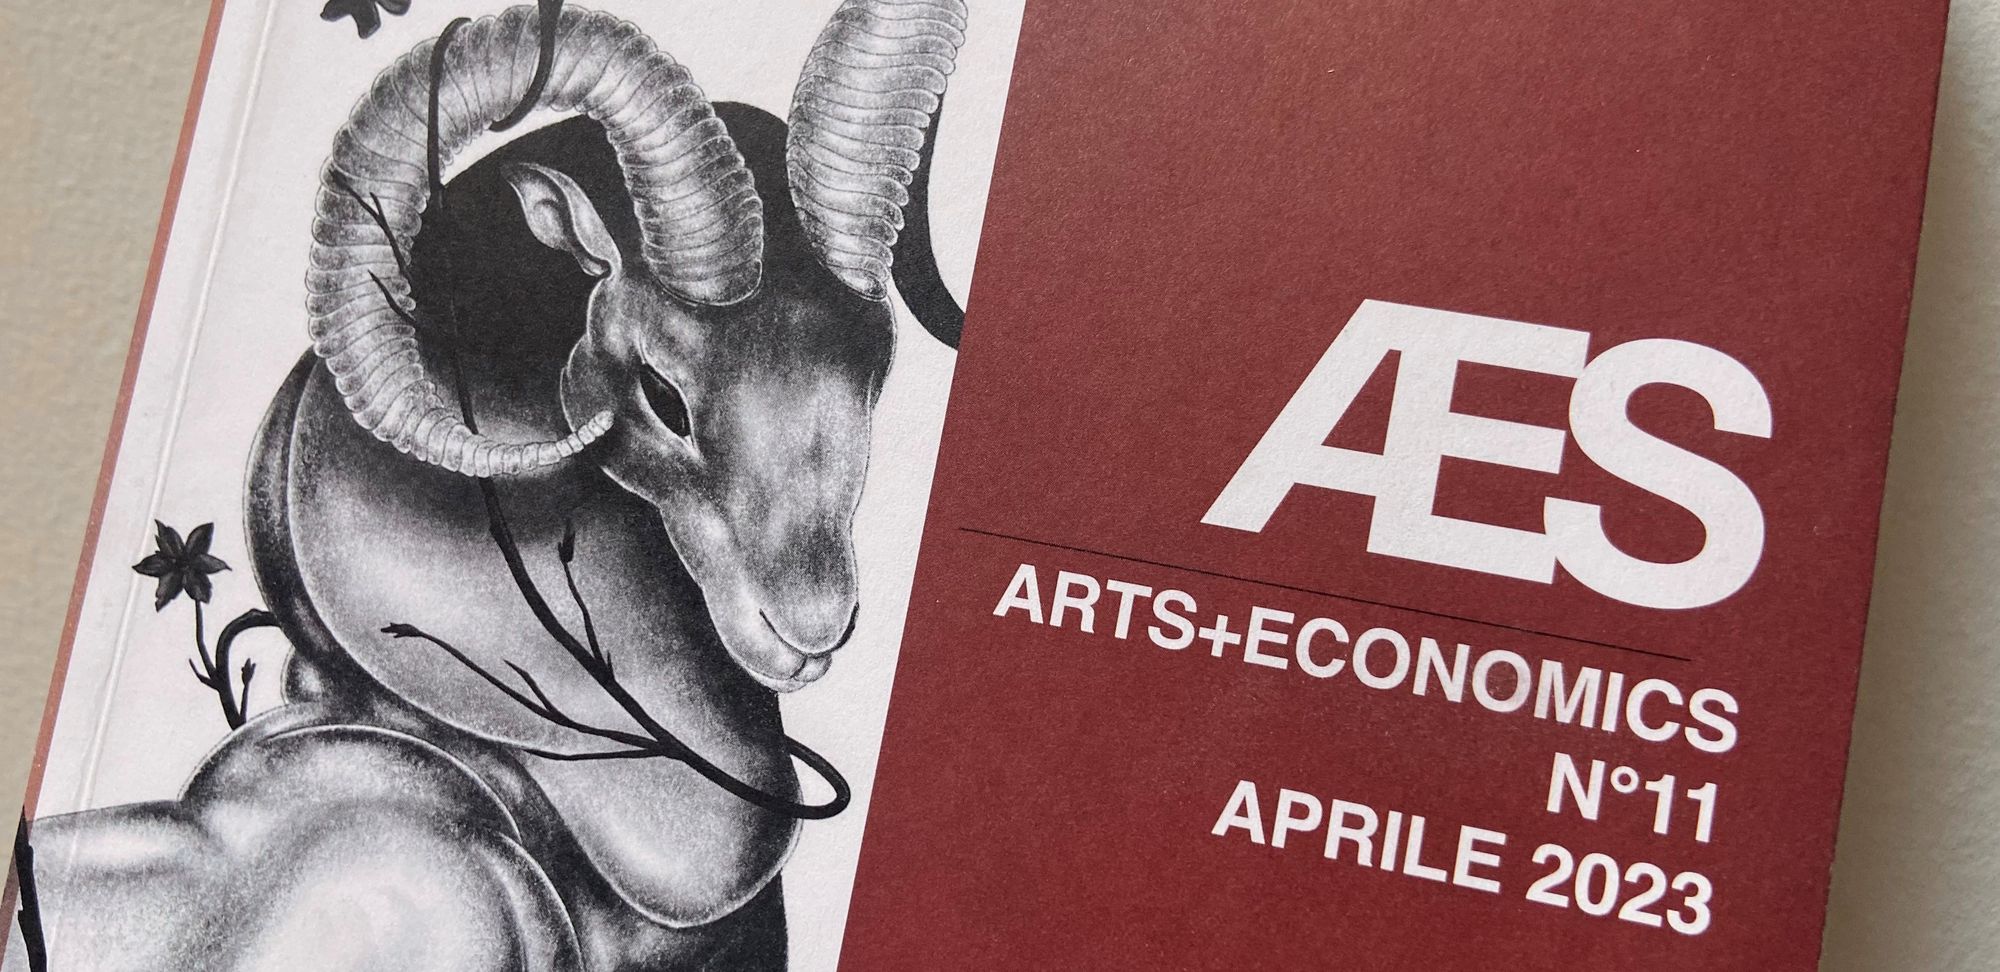 ARTS+ECONOMICS N°11 APRIL 2023